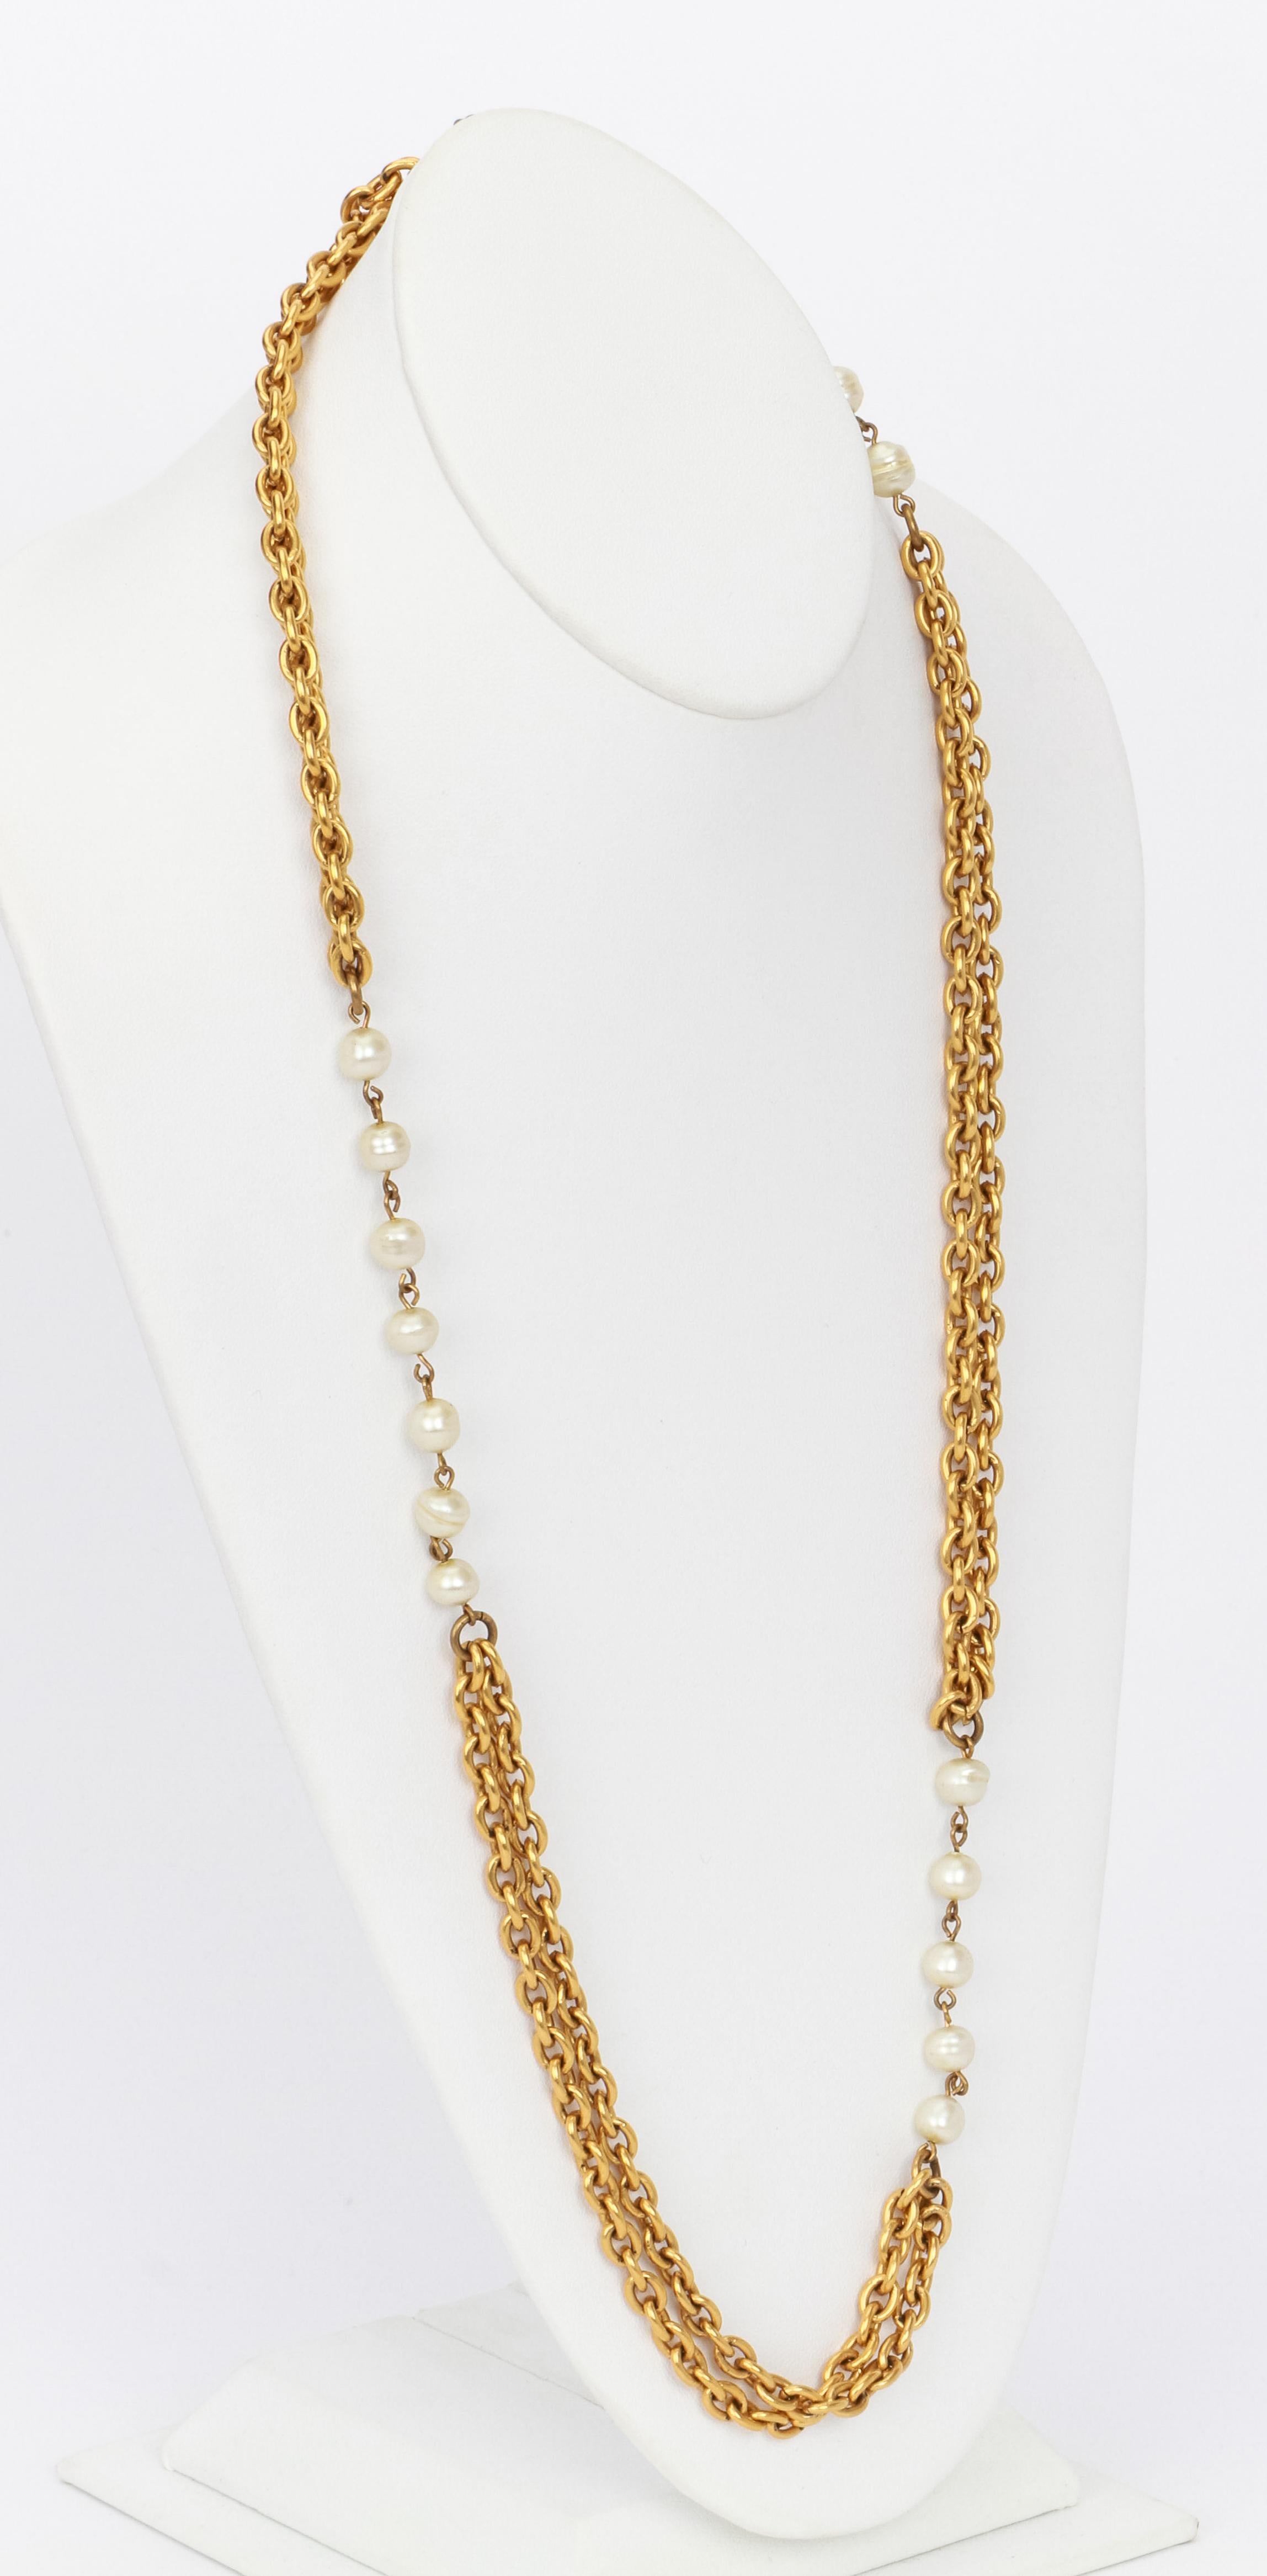 Chanel sautoir doppeltes Goldkettencollier mit Perlen. Leichte Abschürfungen an den Perlen. Wird mit Samtbeutel geliefert.